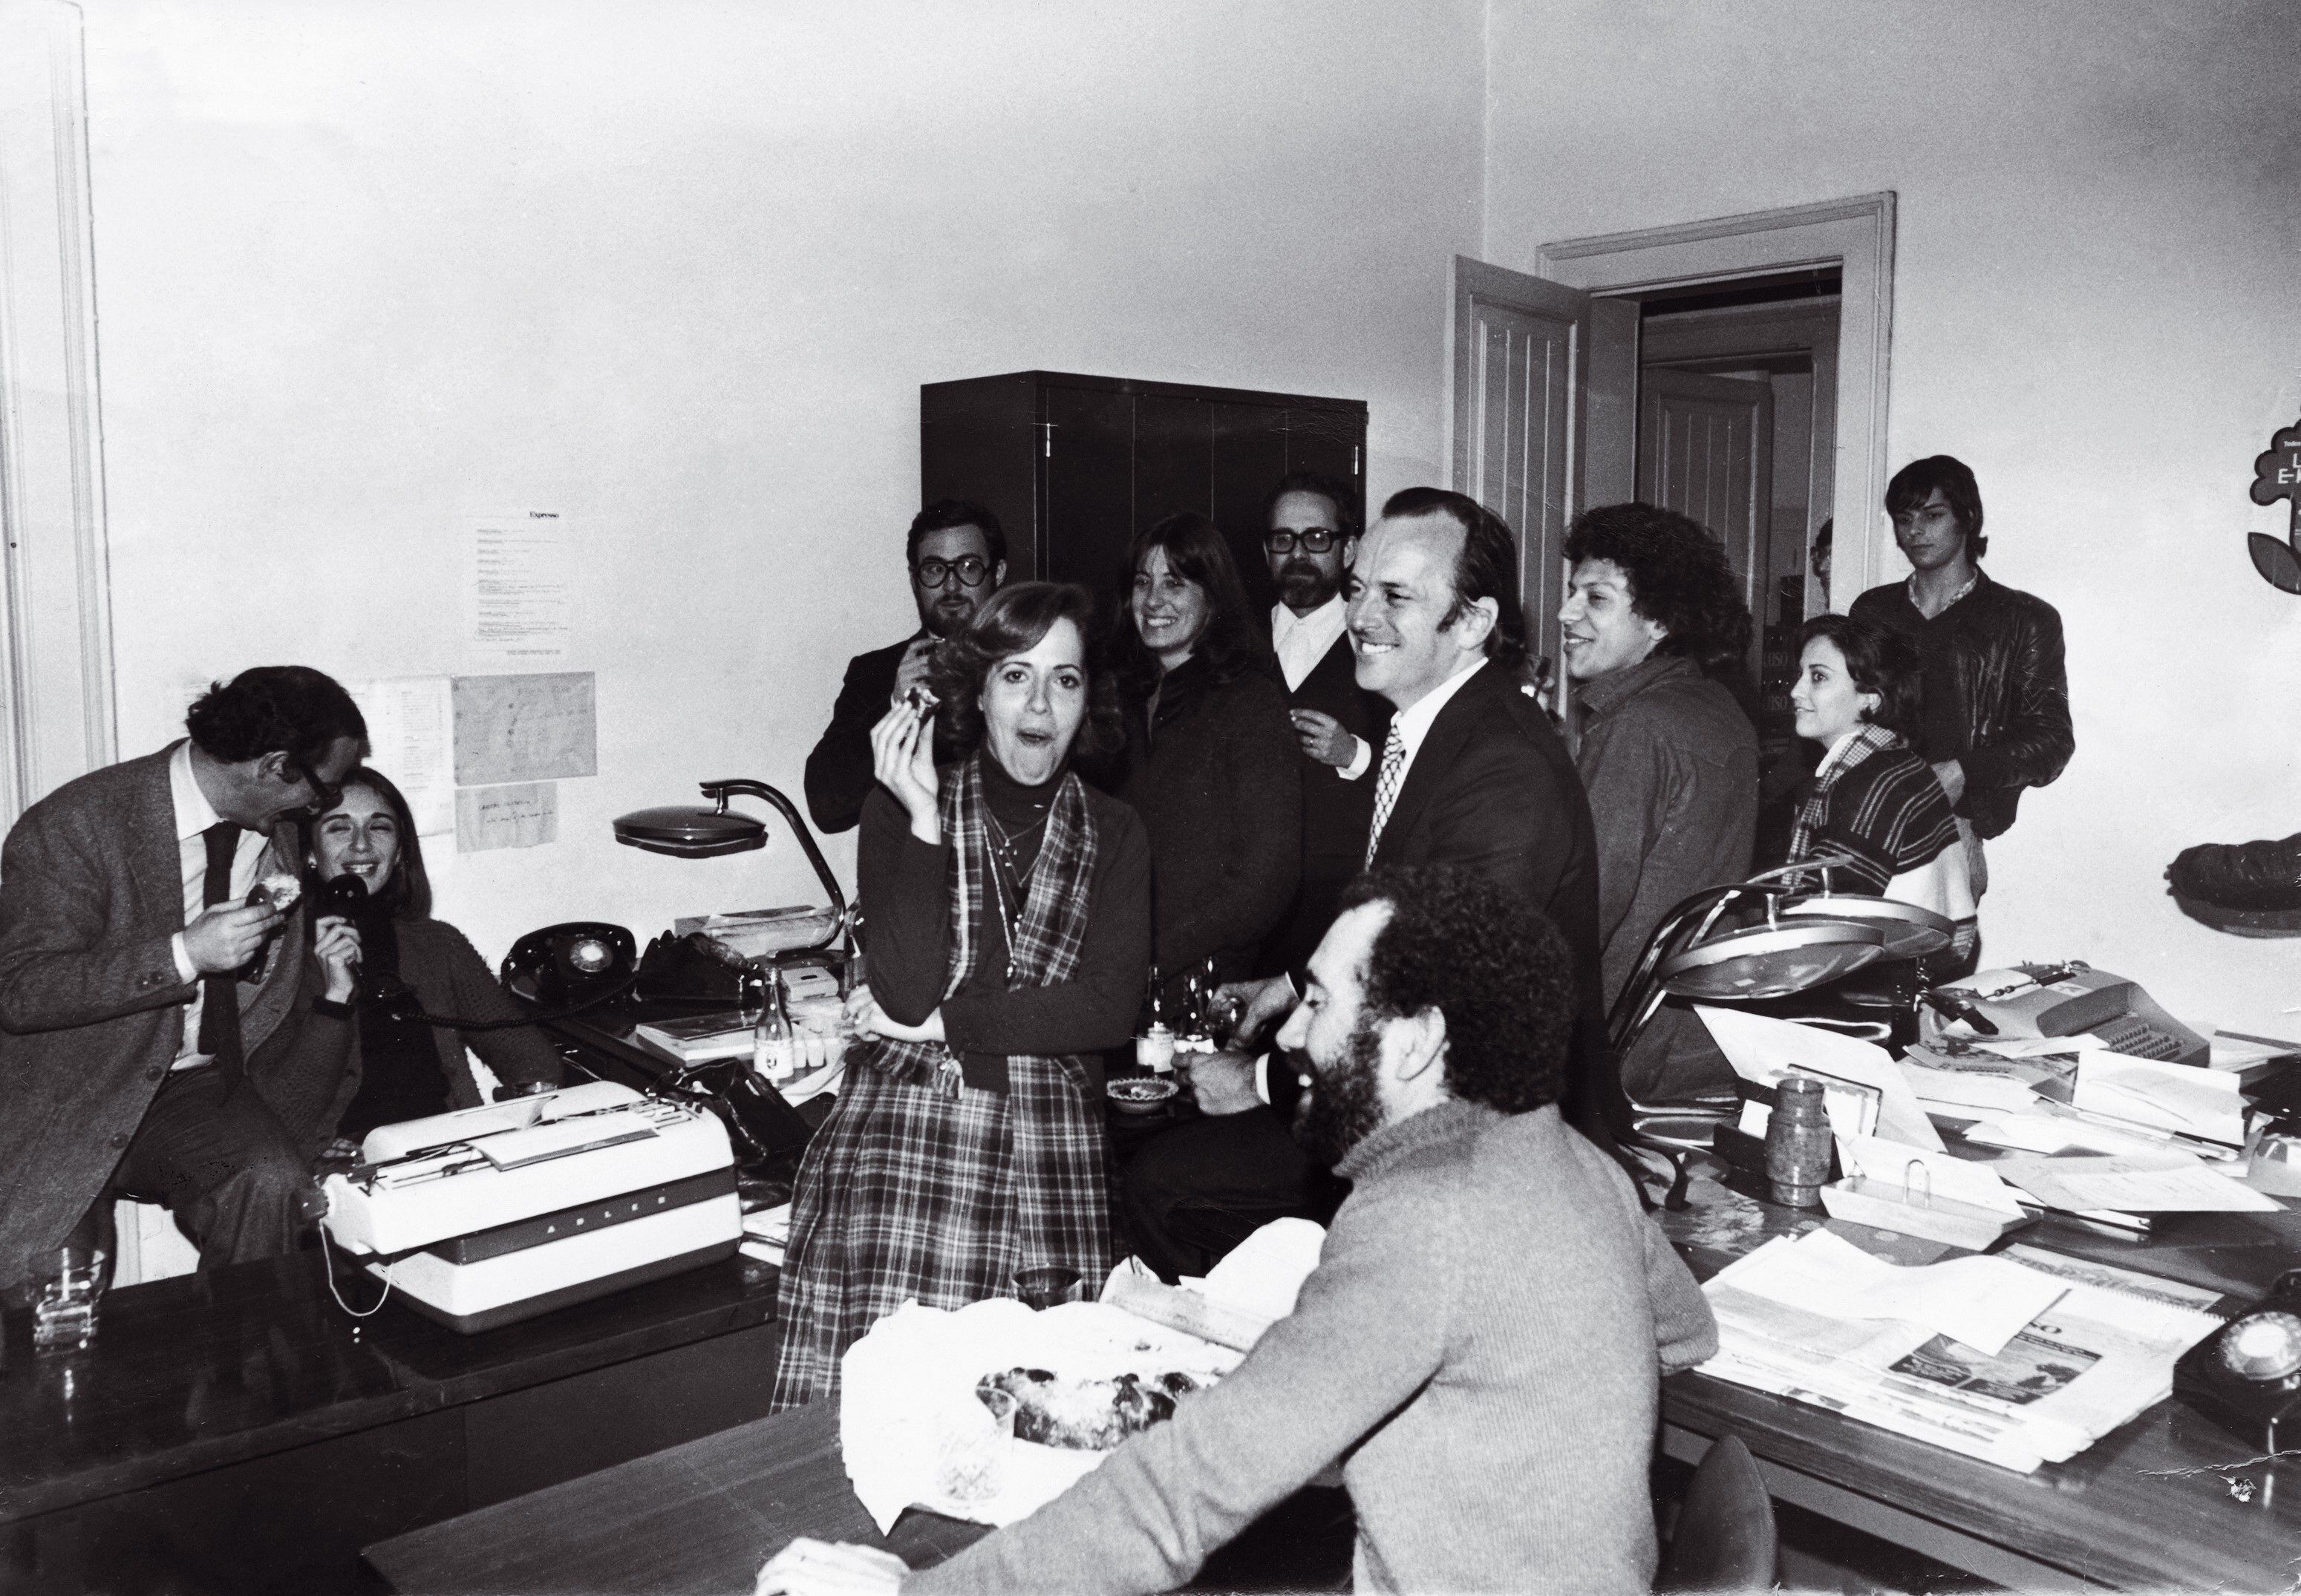 Un descanso en la redacción del semanario portugués 'Expresso', con su director, Francisco Pinto Balsemao, en el centro, en enero de 1974 o 1975.